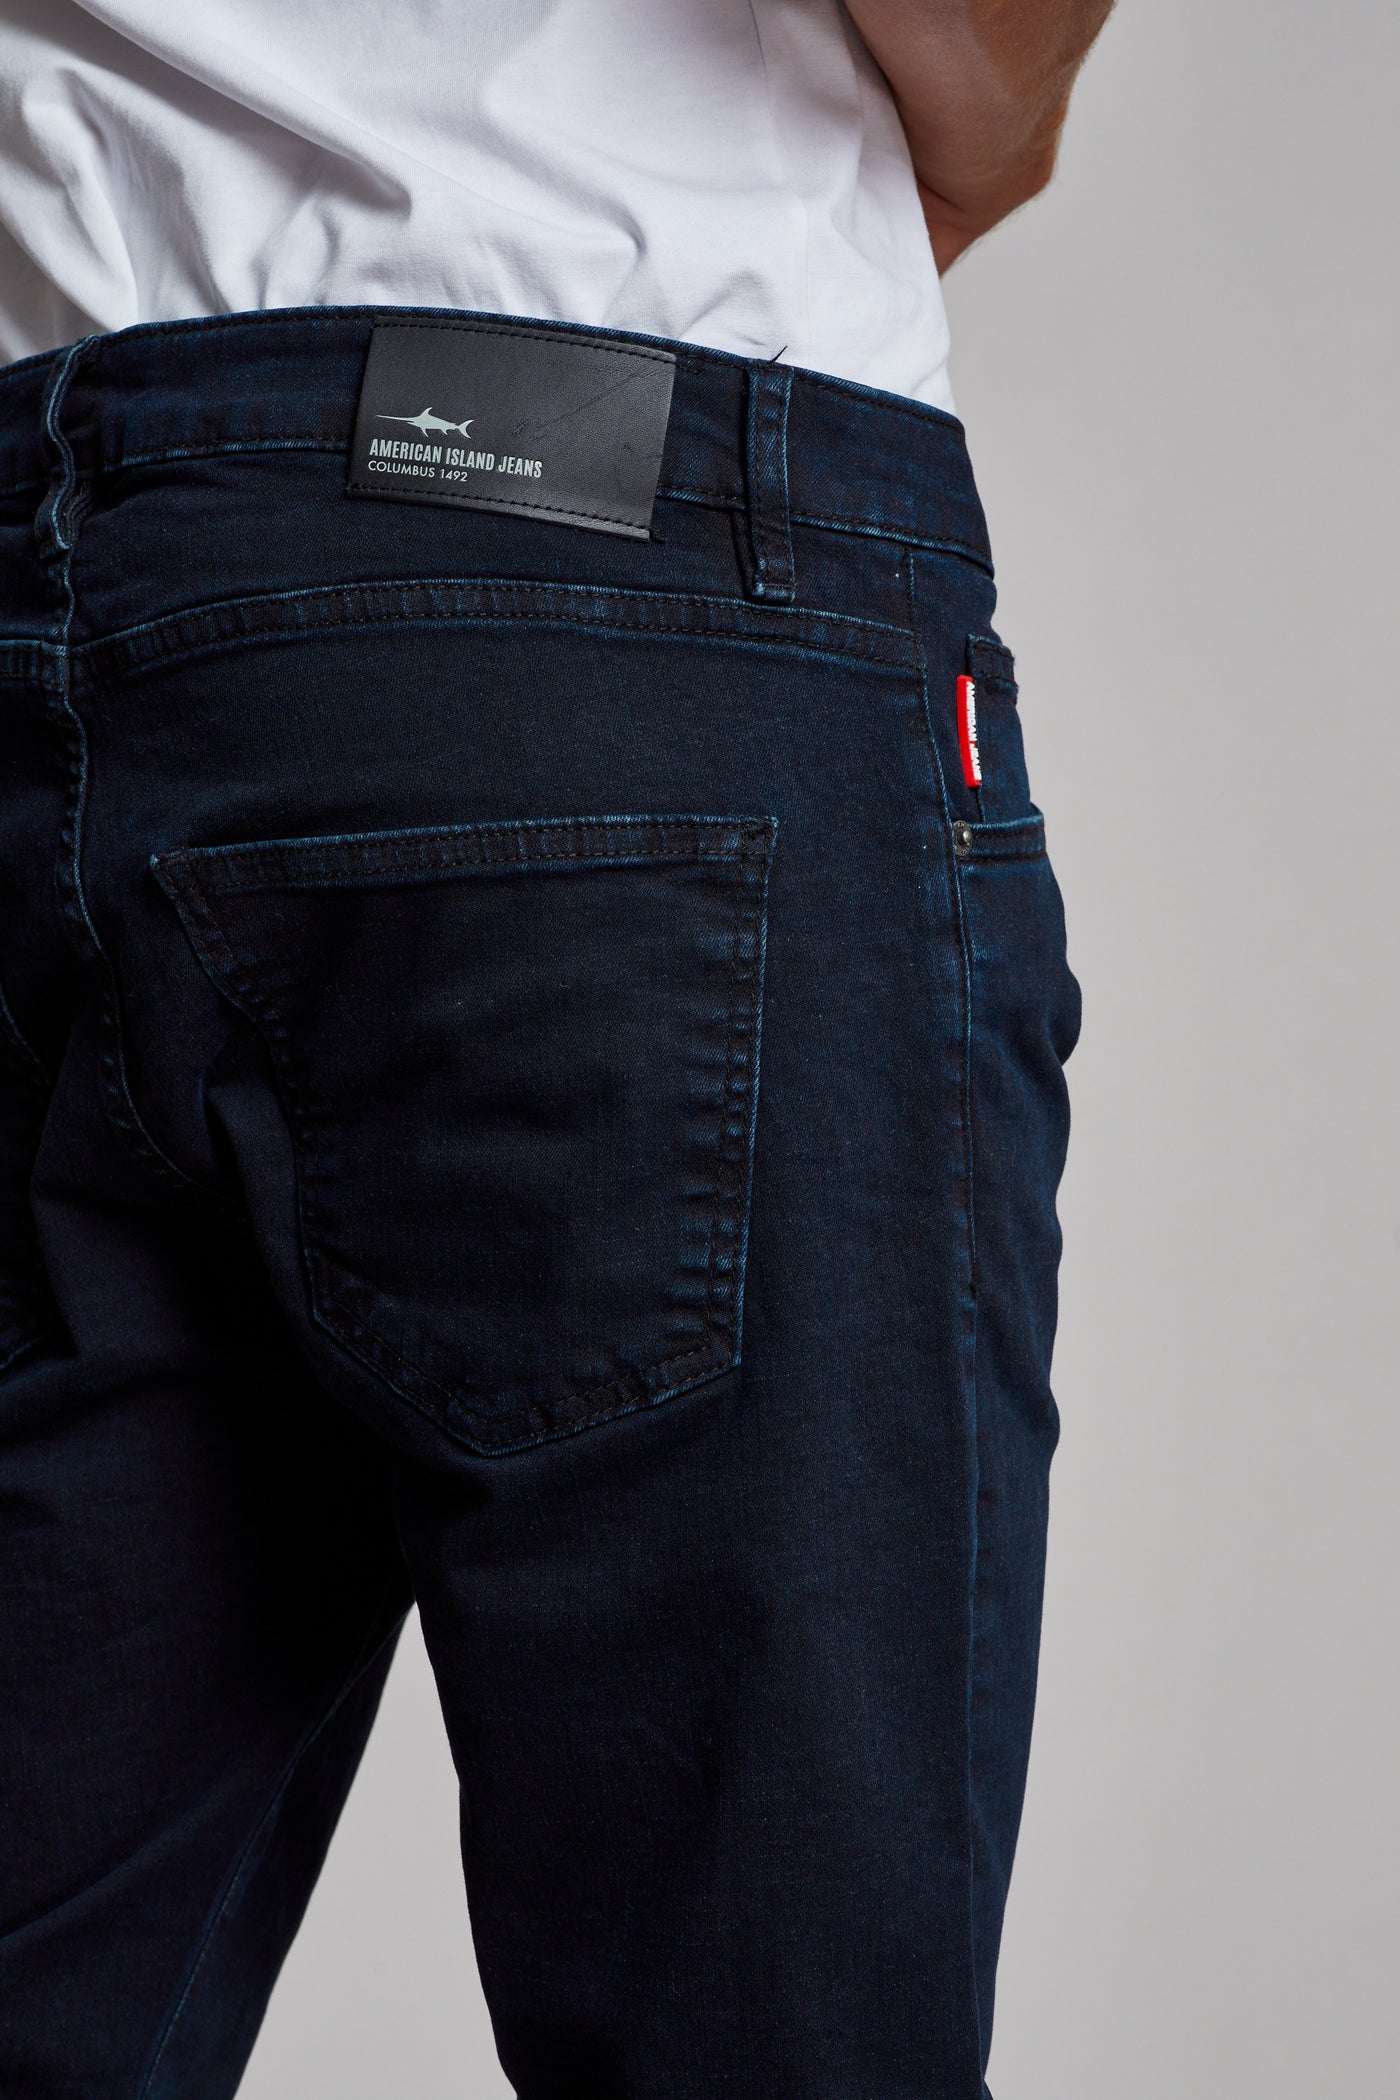 מכנס ג'ינס סלים TU בצבע כחול 2